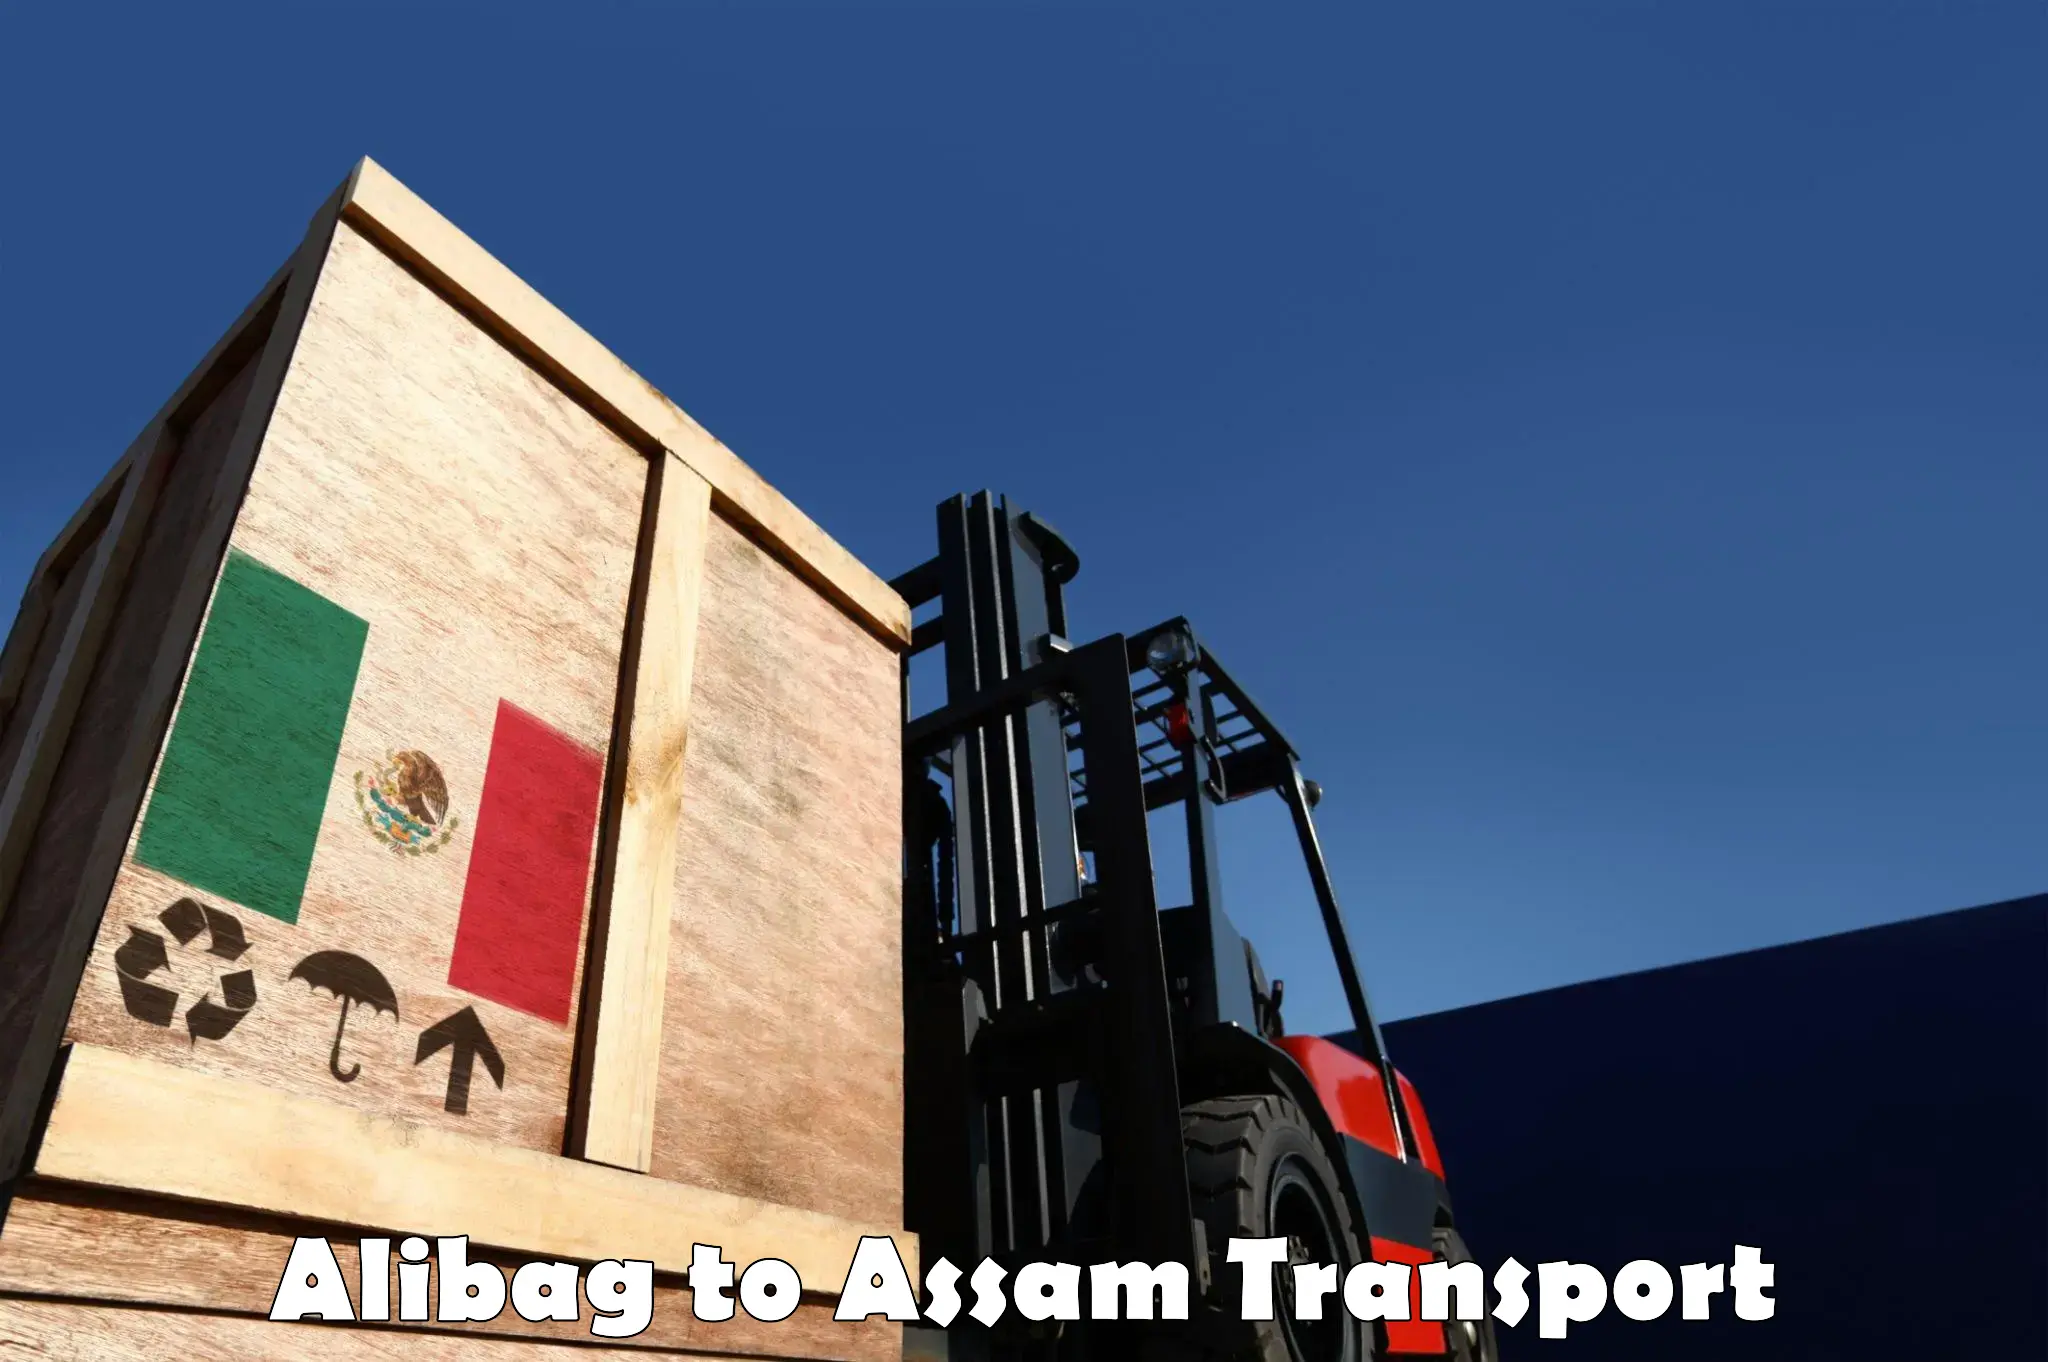 Air cargo transport services Alibag to Assam